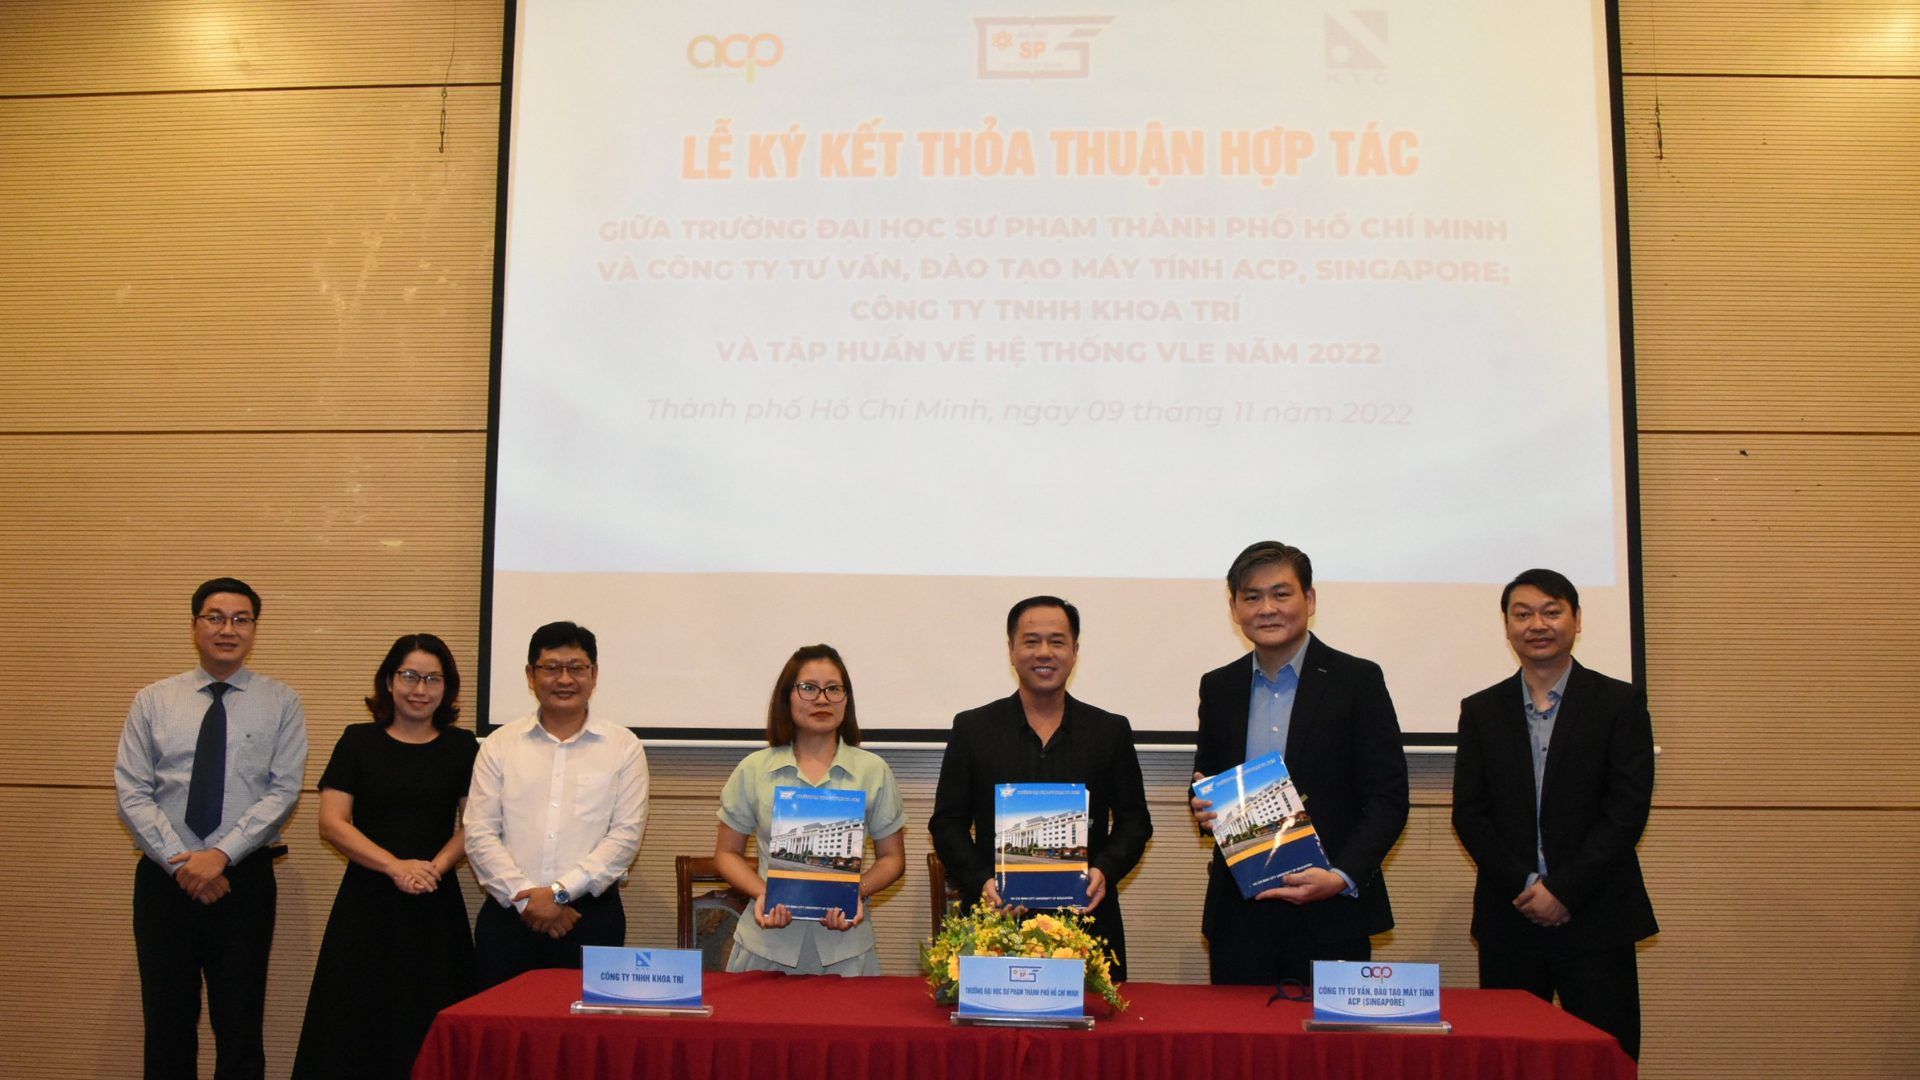 Lễ ký kết Thỏa thuận hợp tác của Trường Đại học Sư phạm Thành phố Hồ Chí Minh - Công ty TVĐT Máy tính ACP (Singapore) - Công ty TNHH Khoa Trí và tập huấn hệ thống VLE năm 2022